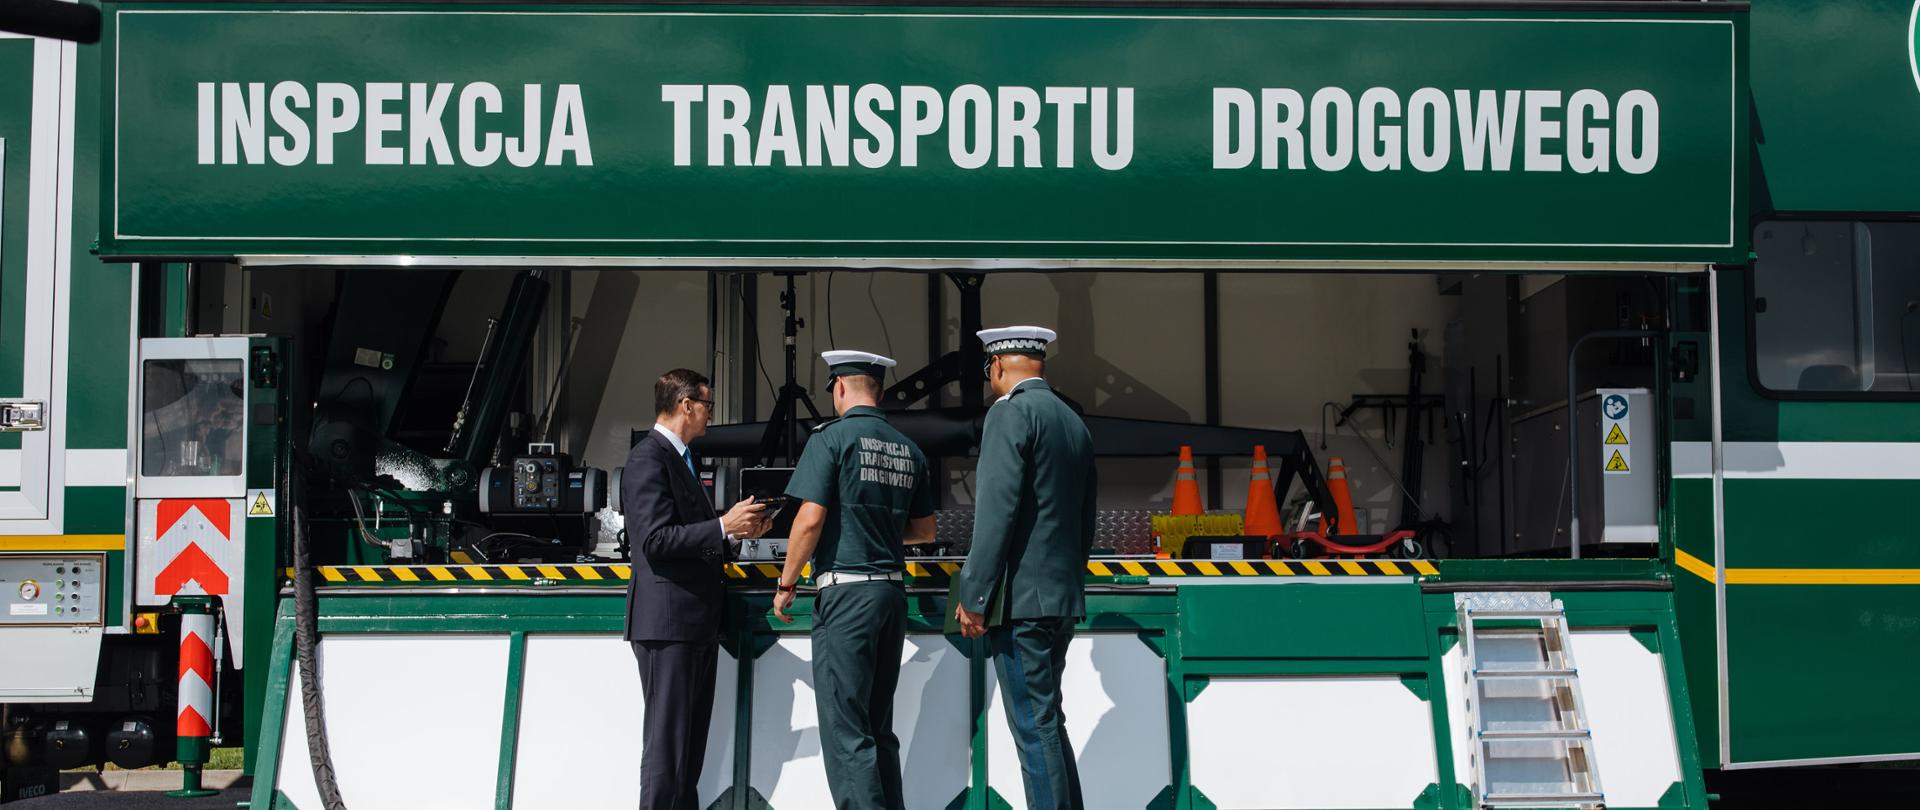 Premier stoi przy samochodzie Inspekcji Transportu Drogowego.